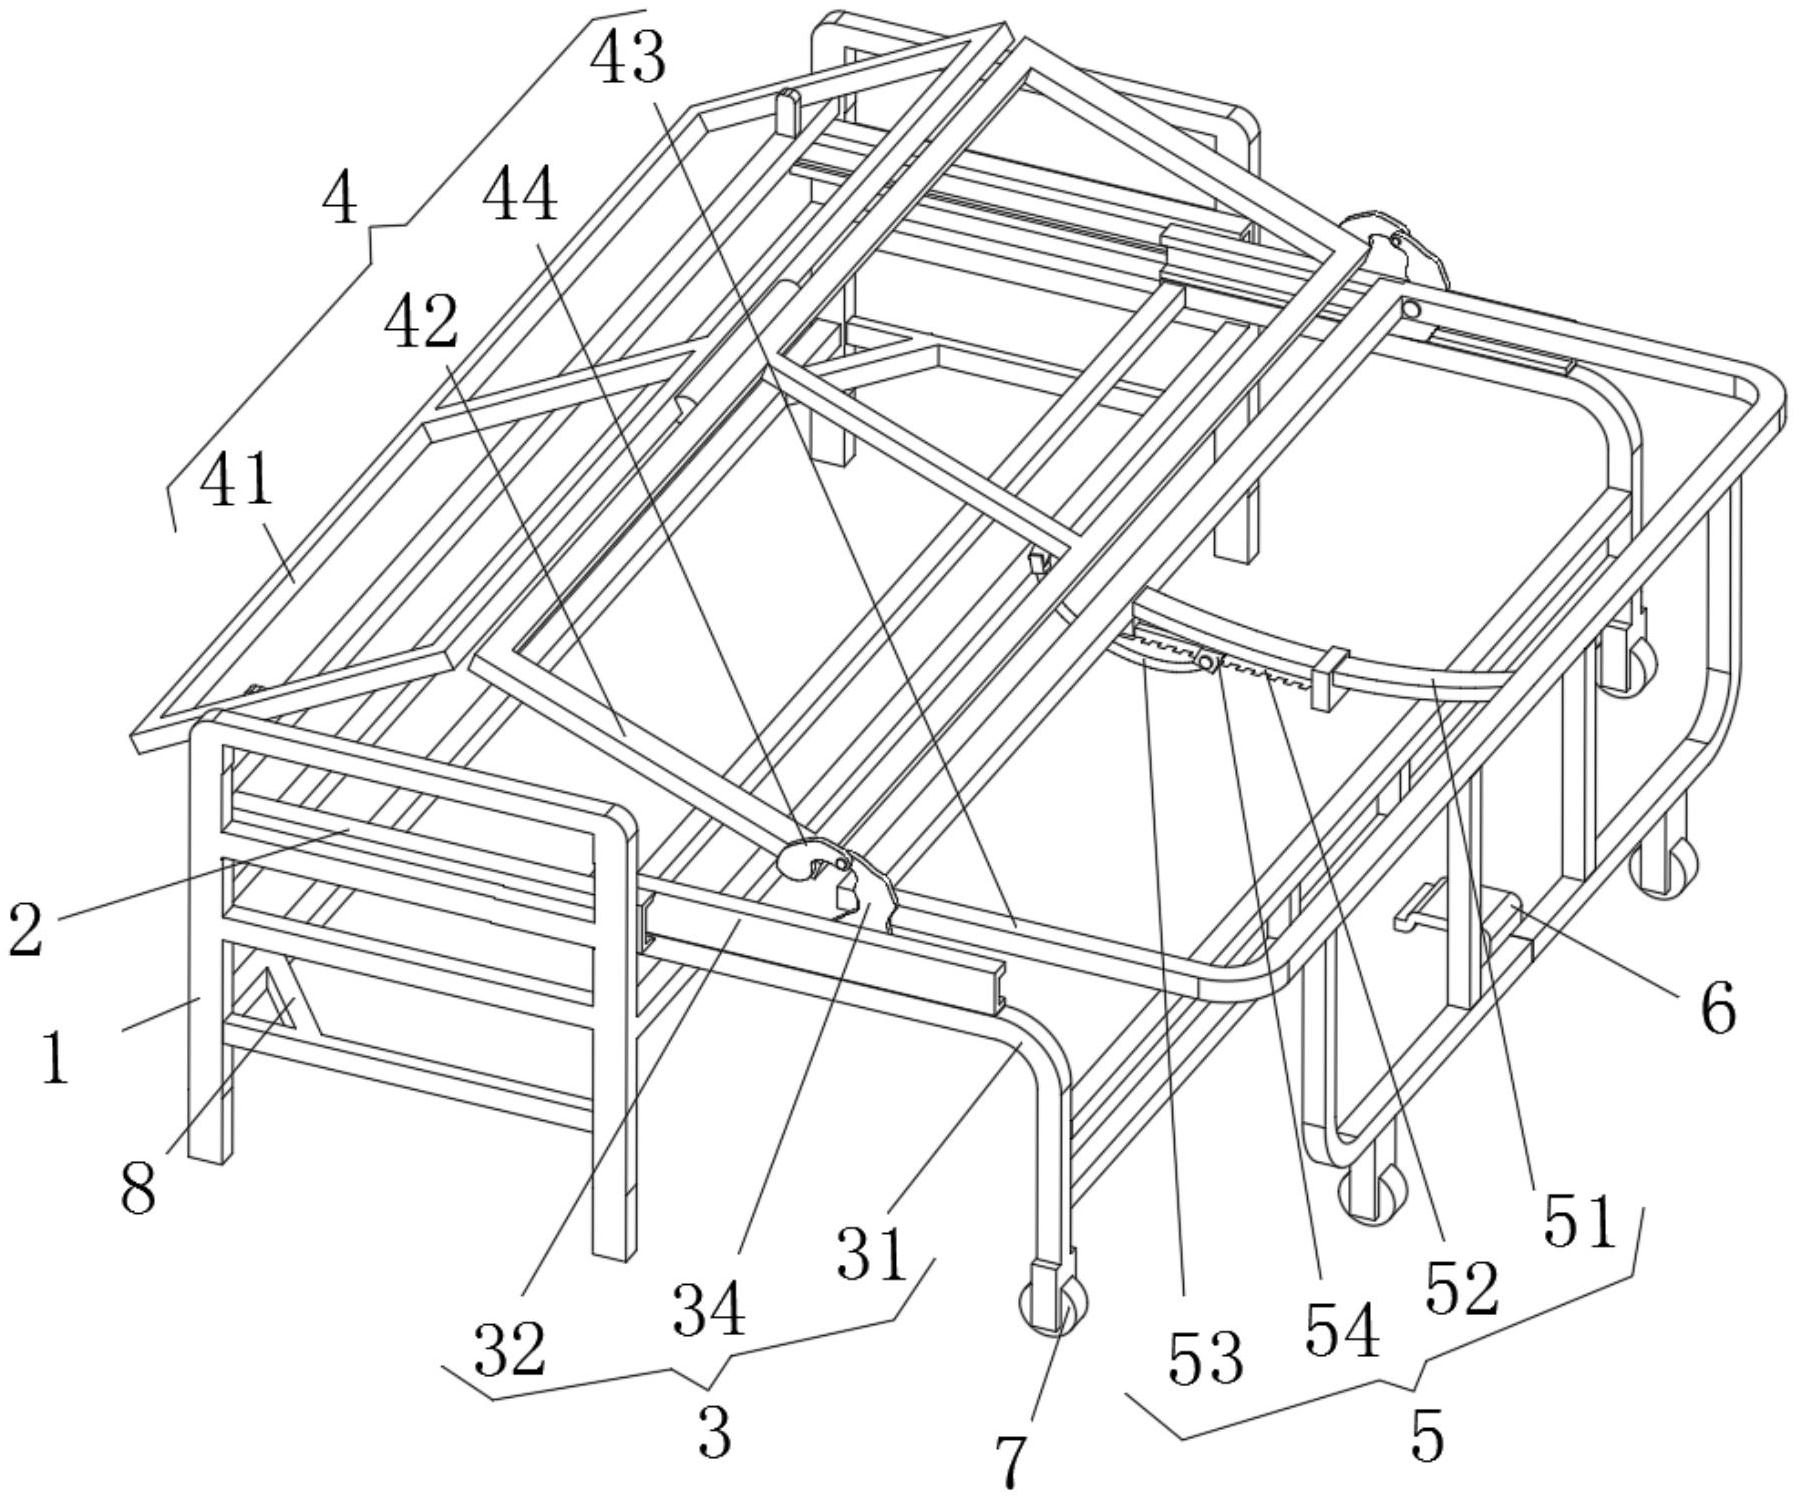 软体沙发木架结构图片图片